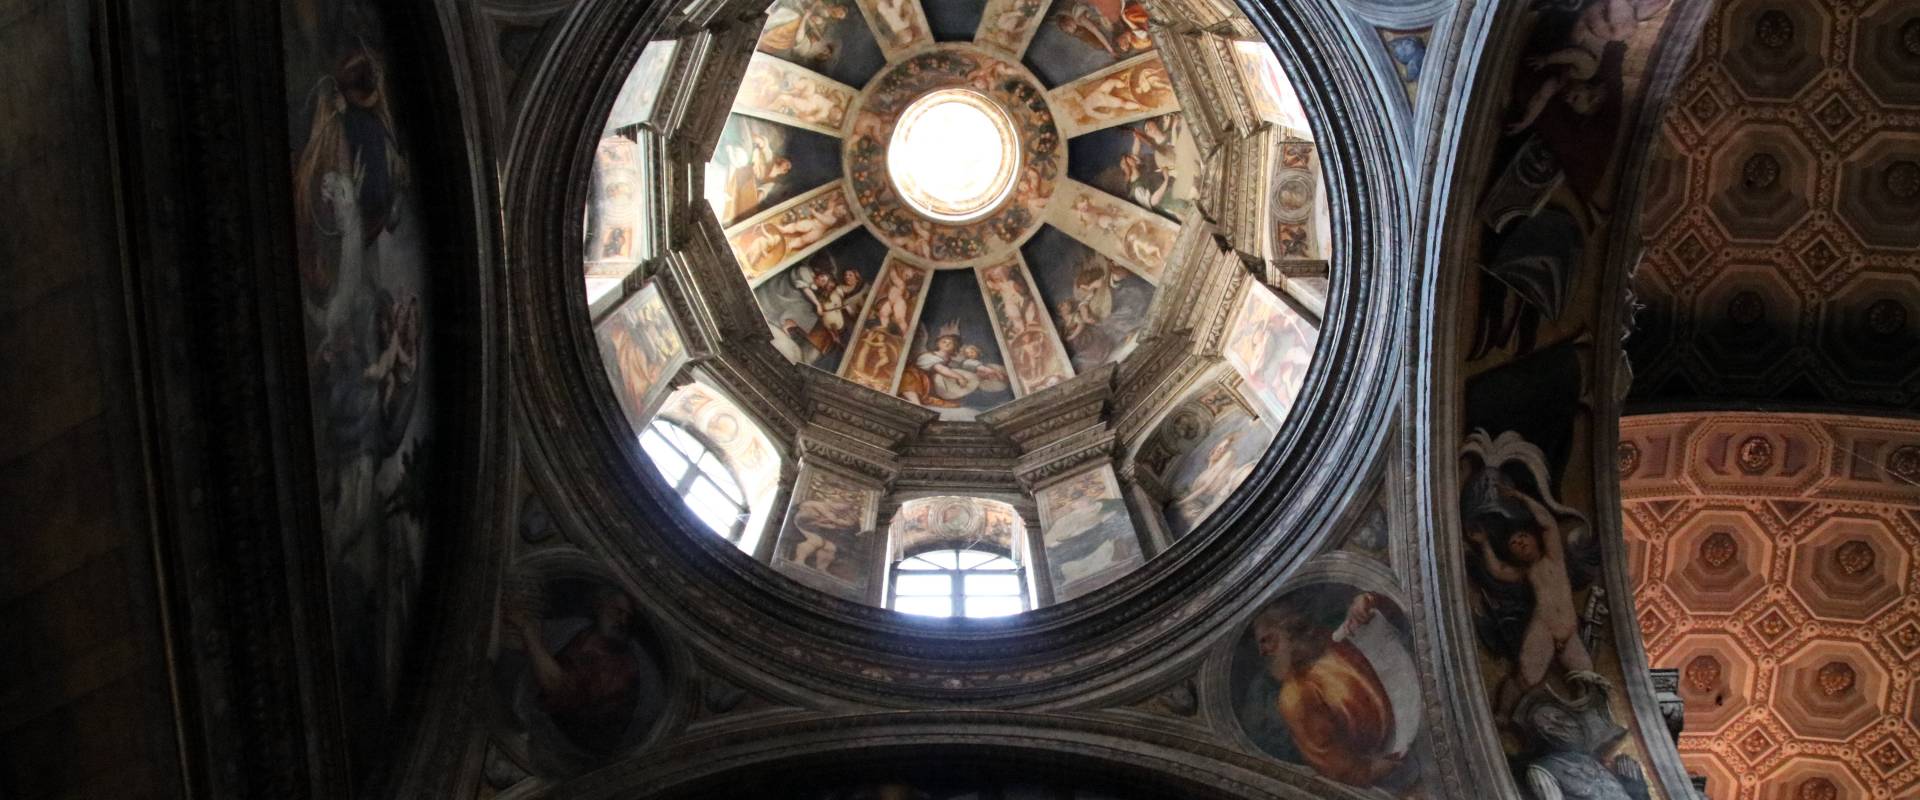 Cupola, affrescato dal Pordenone (1530) 01 foto di Mongolo1984